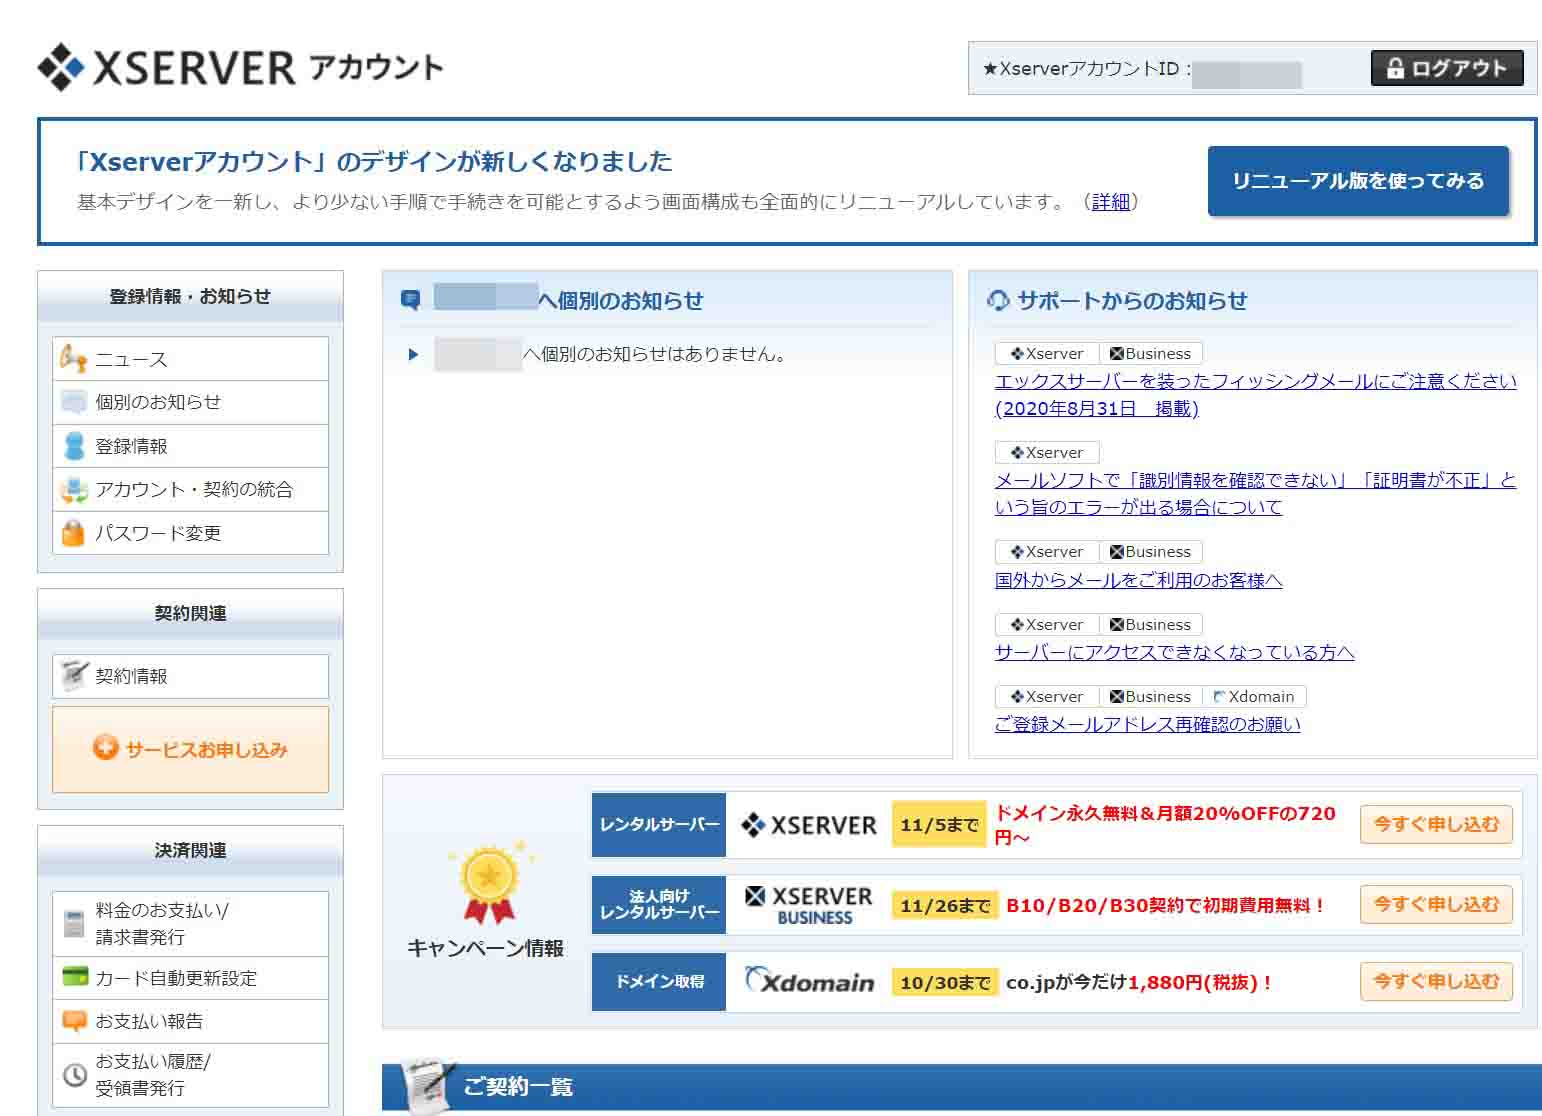 エックスサーバーのXserverアカウントへ二段階認証を用いてログインをする方法！